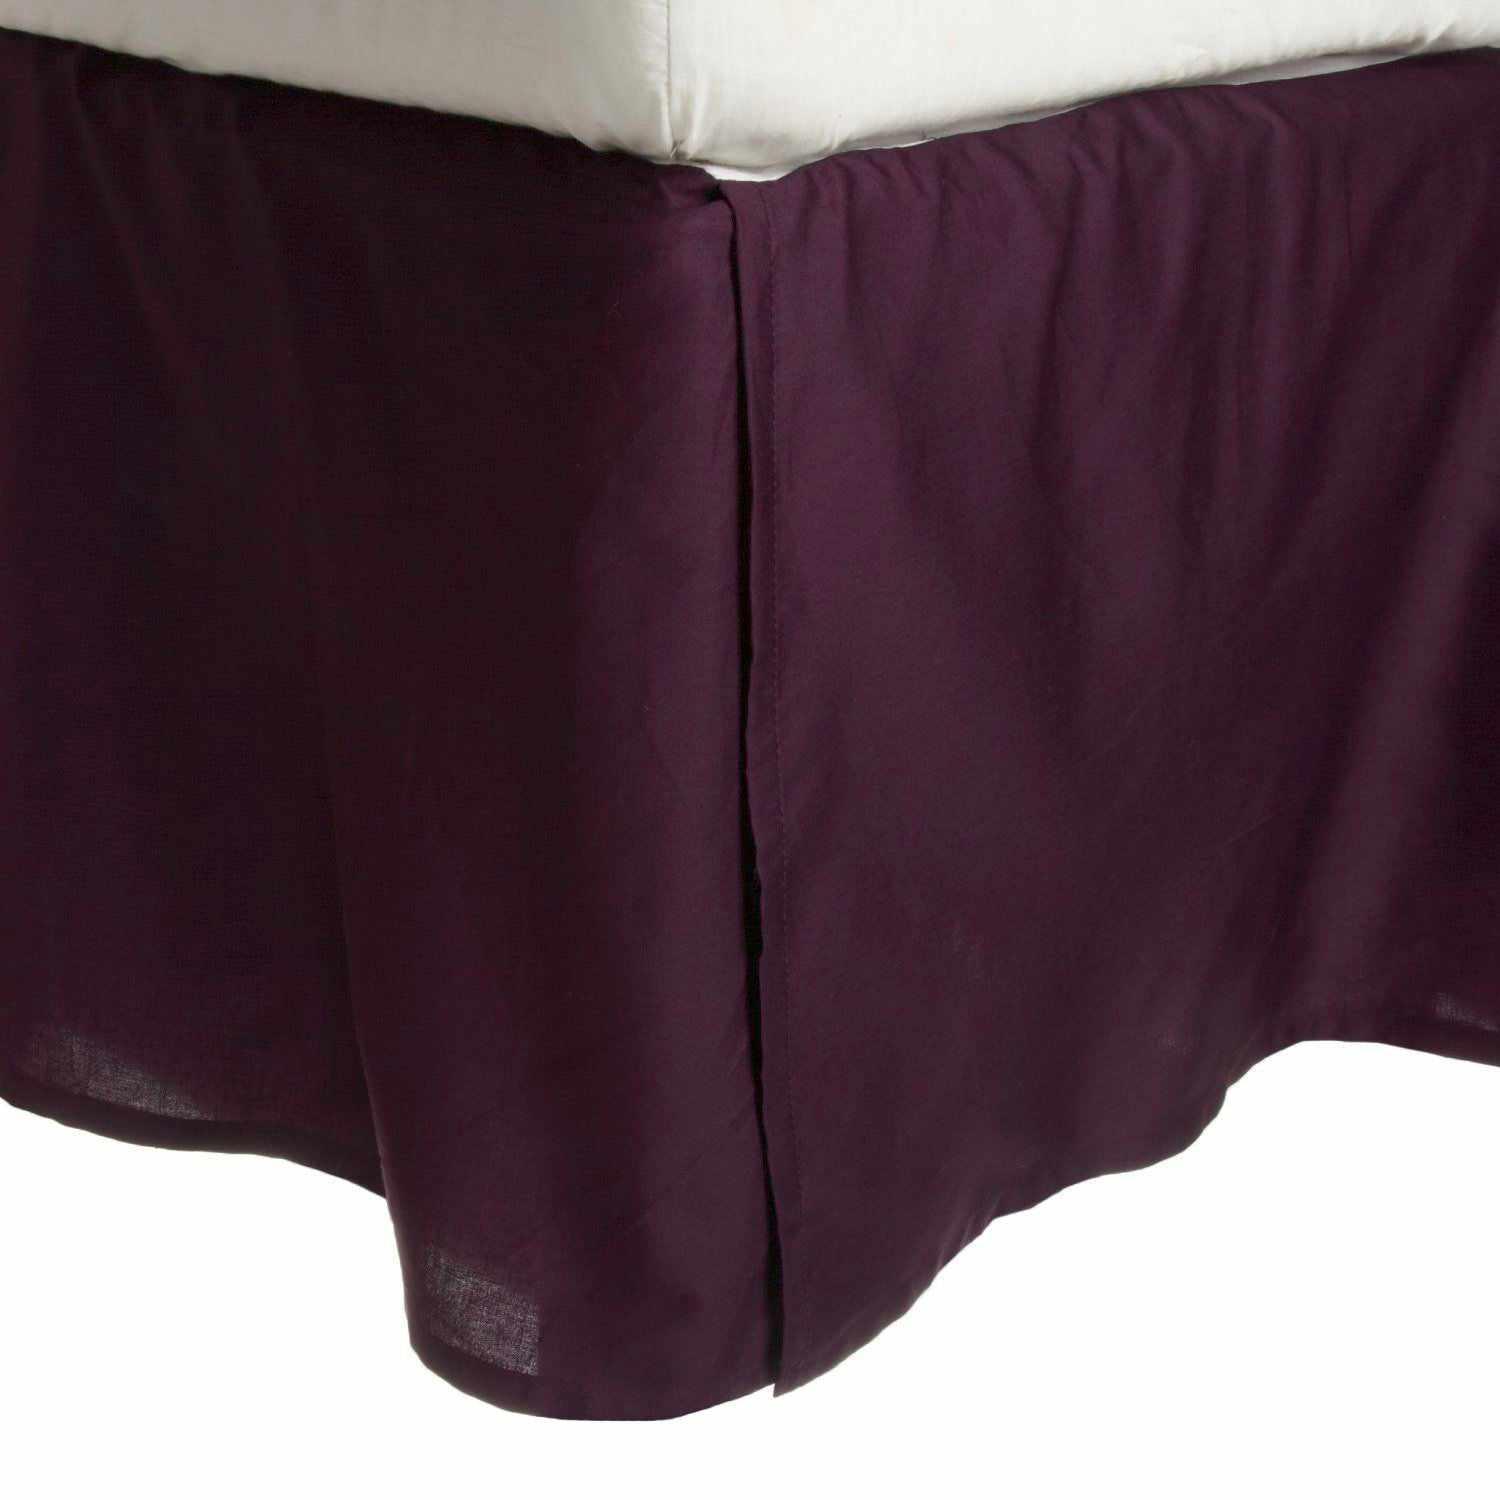  Solid Microfiber Wrinkle Free 15 Inch Drop Bed Skirt - Plum